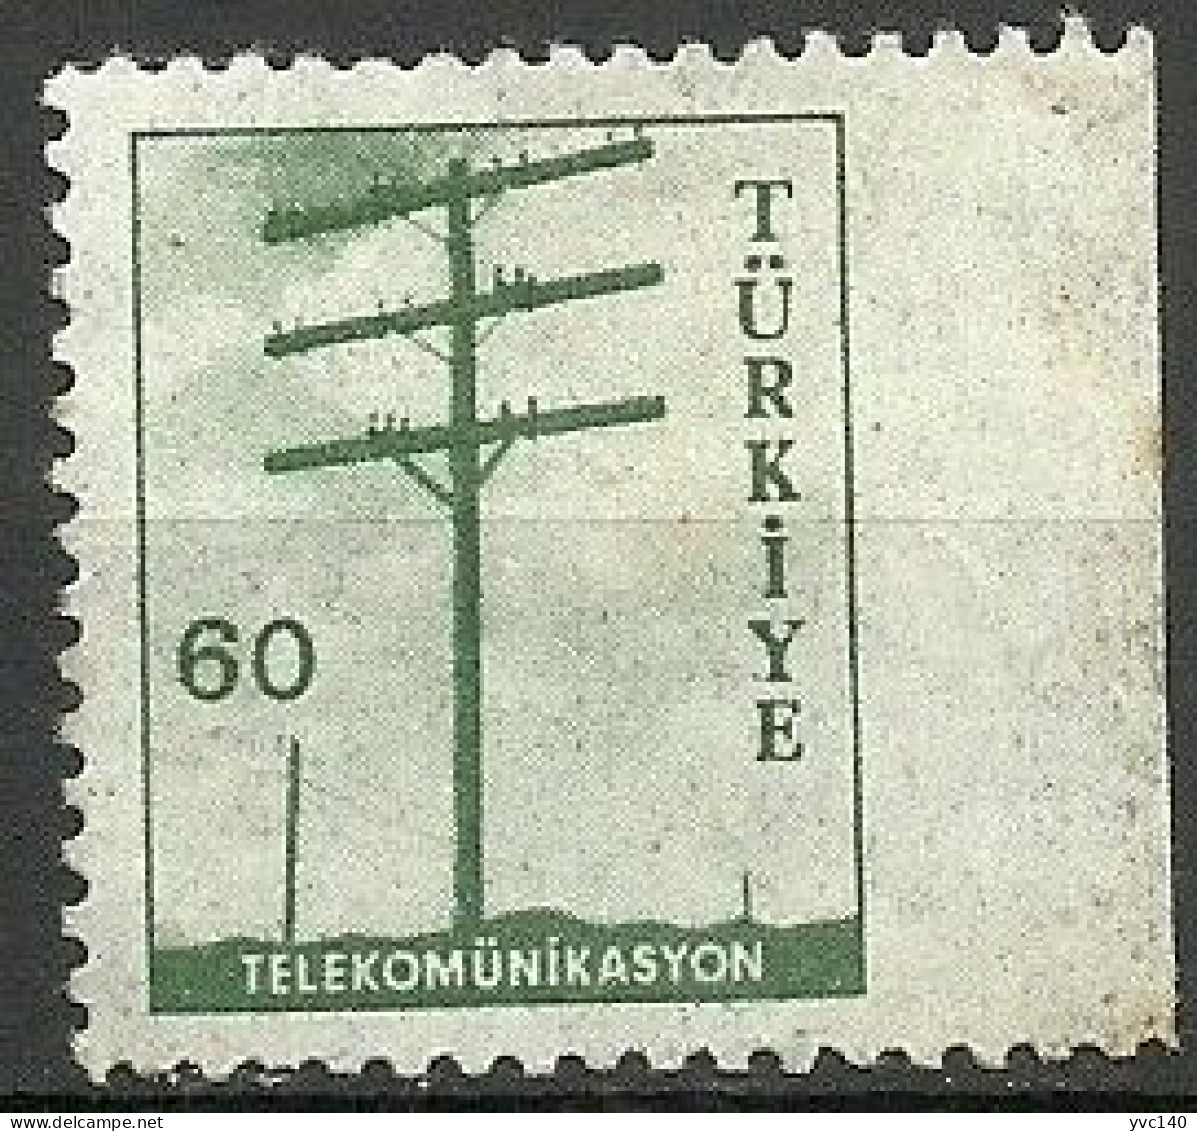 Turkey; 1959 Pictorial Postage Stamp 60 K. ERROR "Imperf. Edge" - Ungebraucht